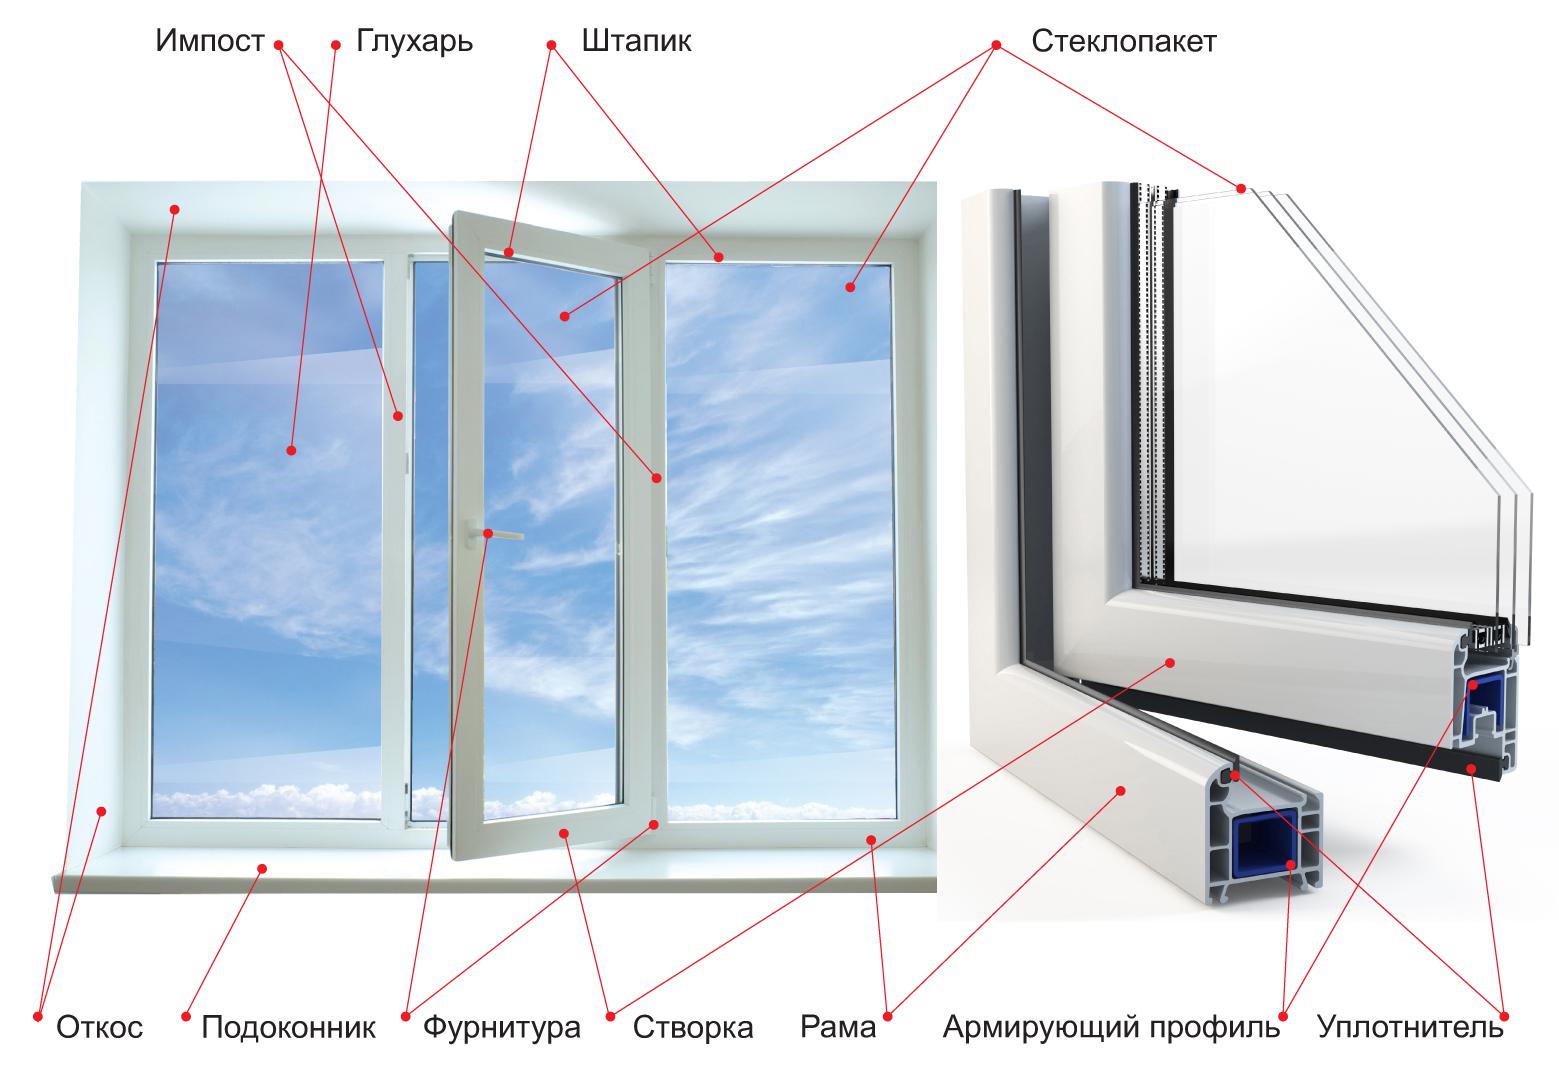 Металлопластиковые окна в Tvoeokno